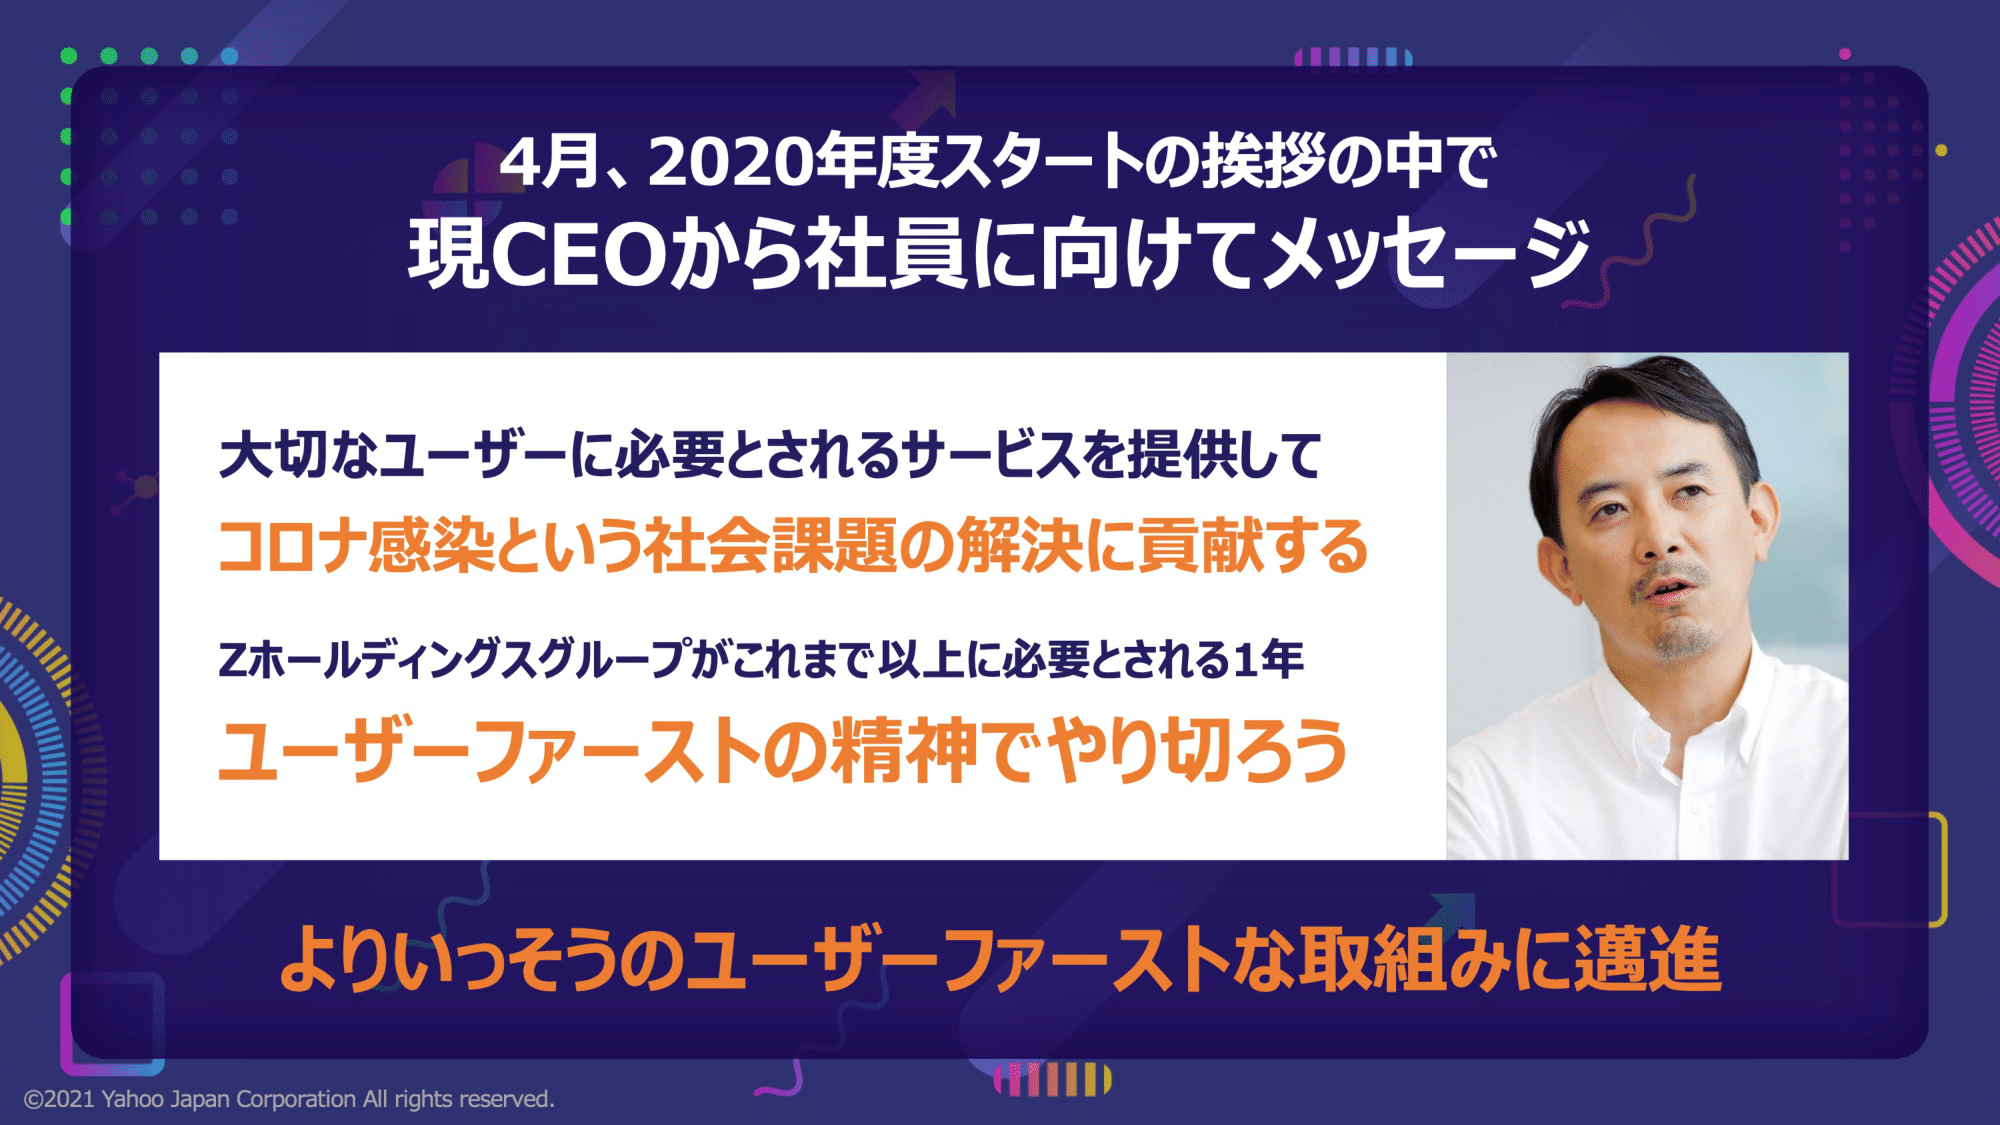 “ユーザーファースト”の精神でやりきろう　Yahoo! JAPANが震災から学んだサービス提供の向き合い方